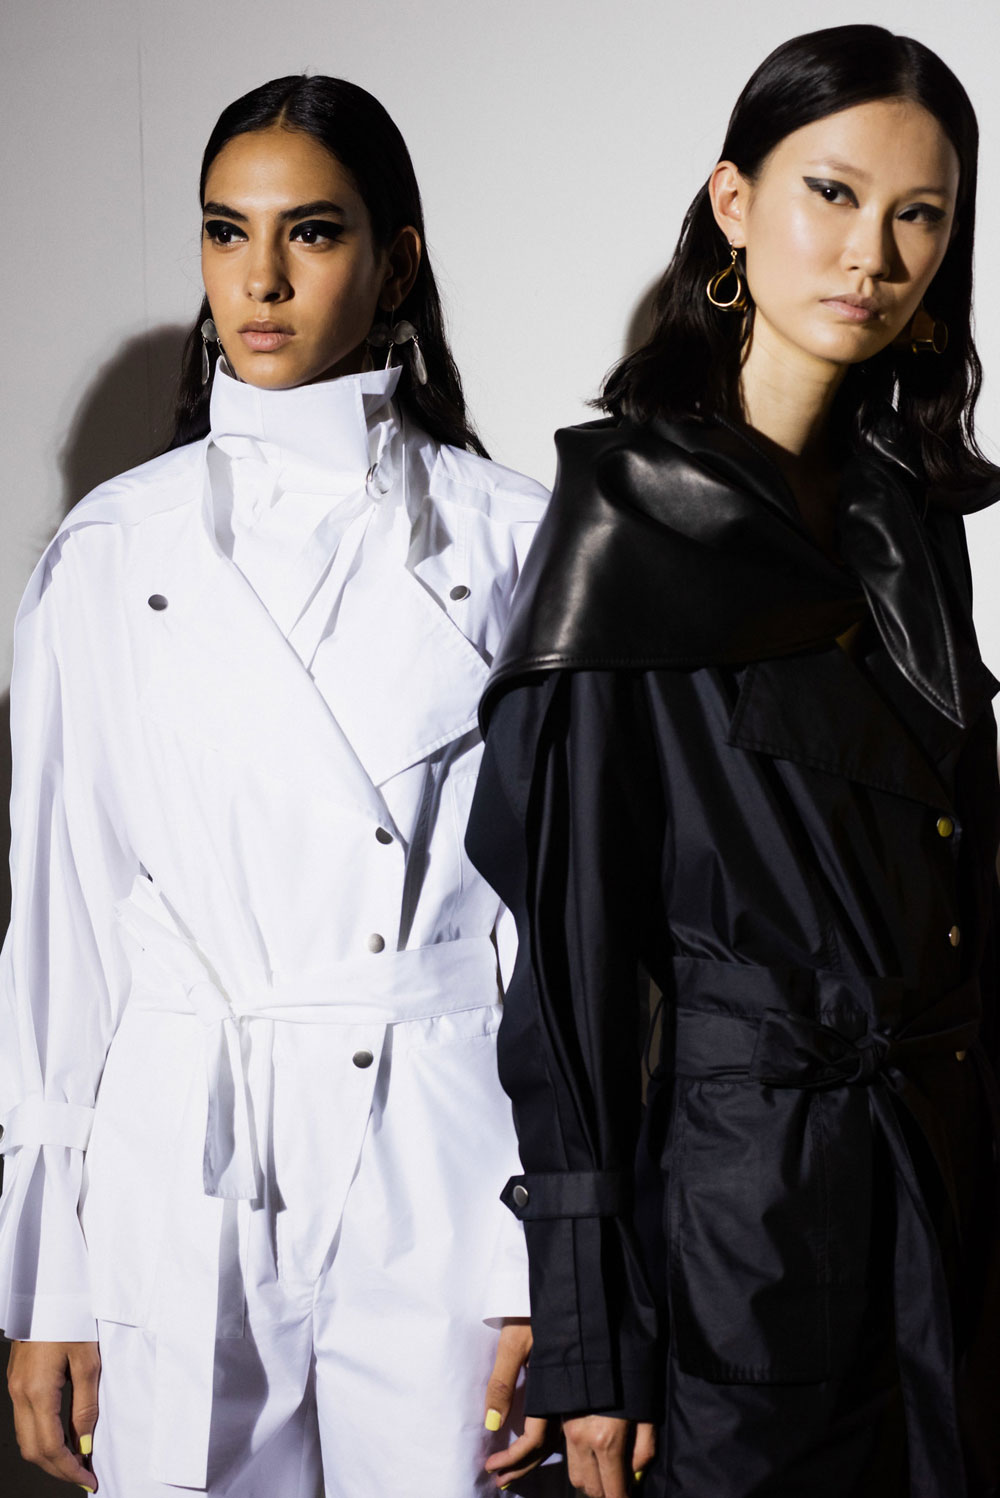 sonrisa nimmt Dich mit hinter die Kulissen der Fashionweek in NYC, von wo die Aveda-Profis die neusten Haar-Trends setzen.